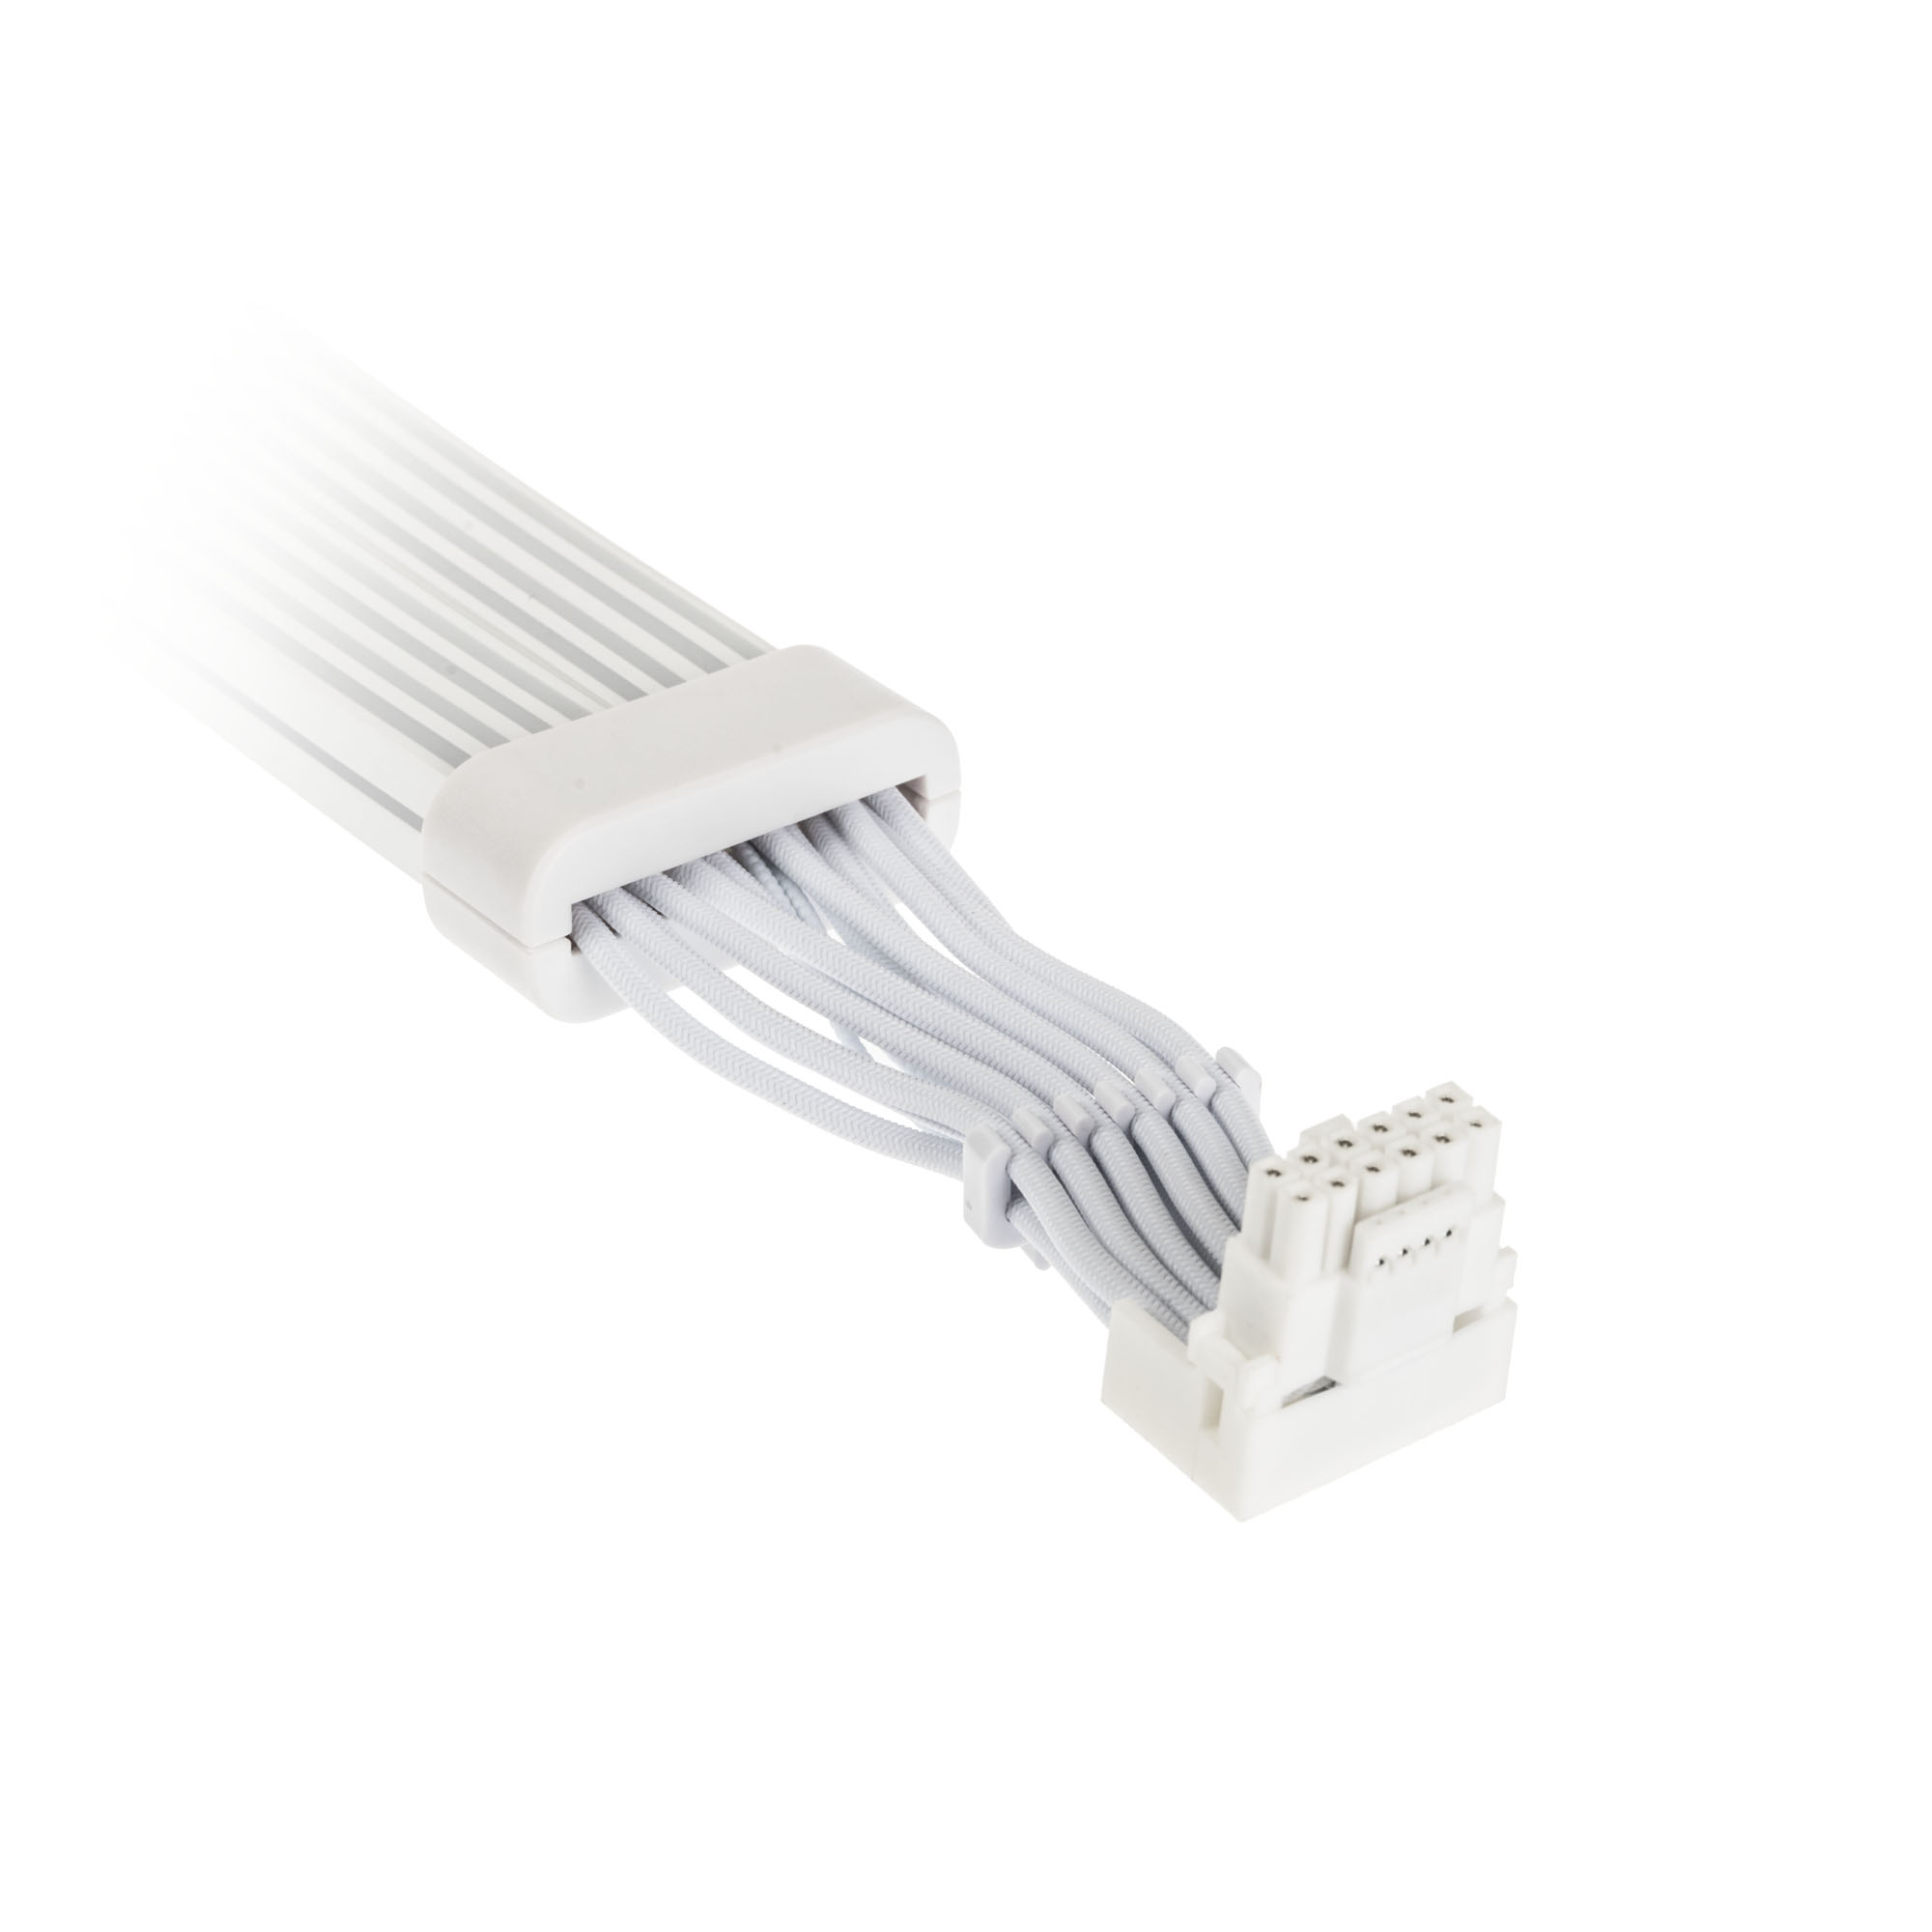 Kolink - Kolink Umbra Radiant ARGB 12V-2x6 to 12V-2x6 Cable